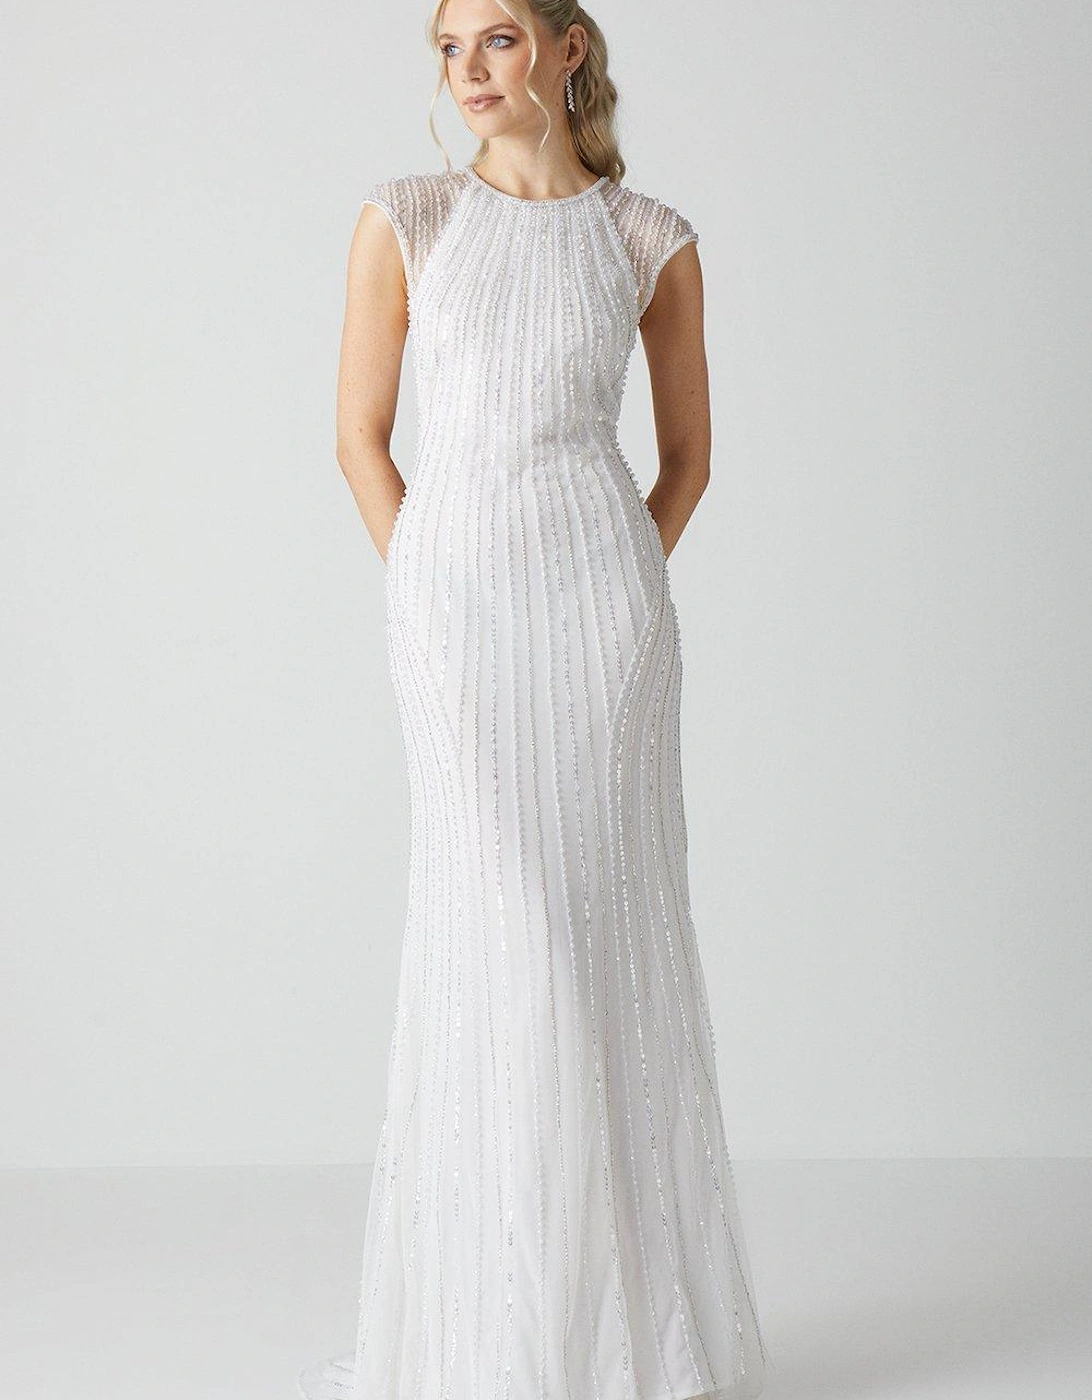 Embellished Cap Sleeve Linear Embellished Wedding Dress, 5 of 4